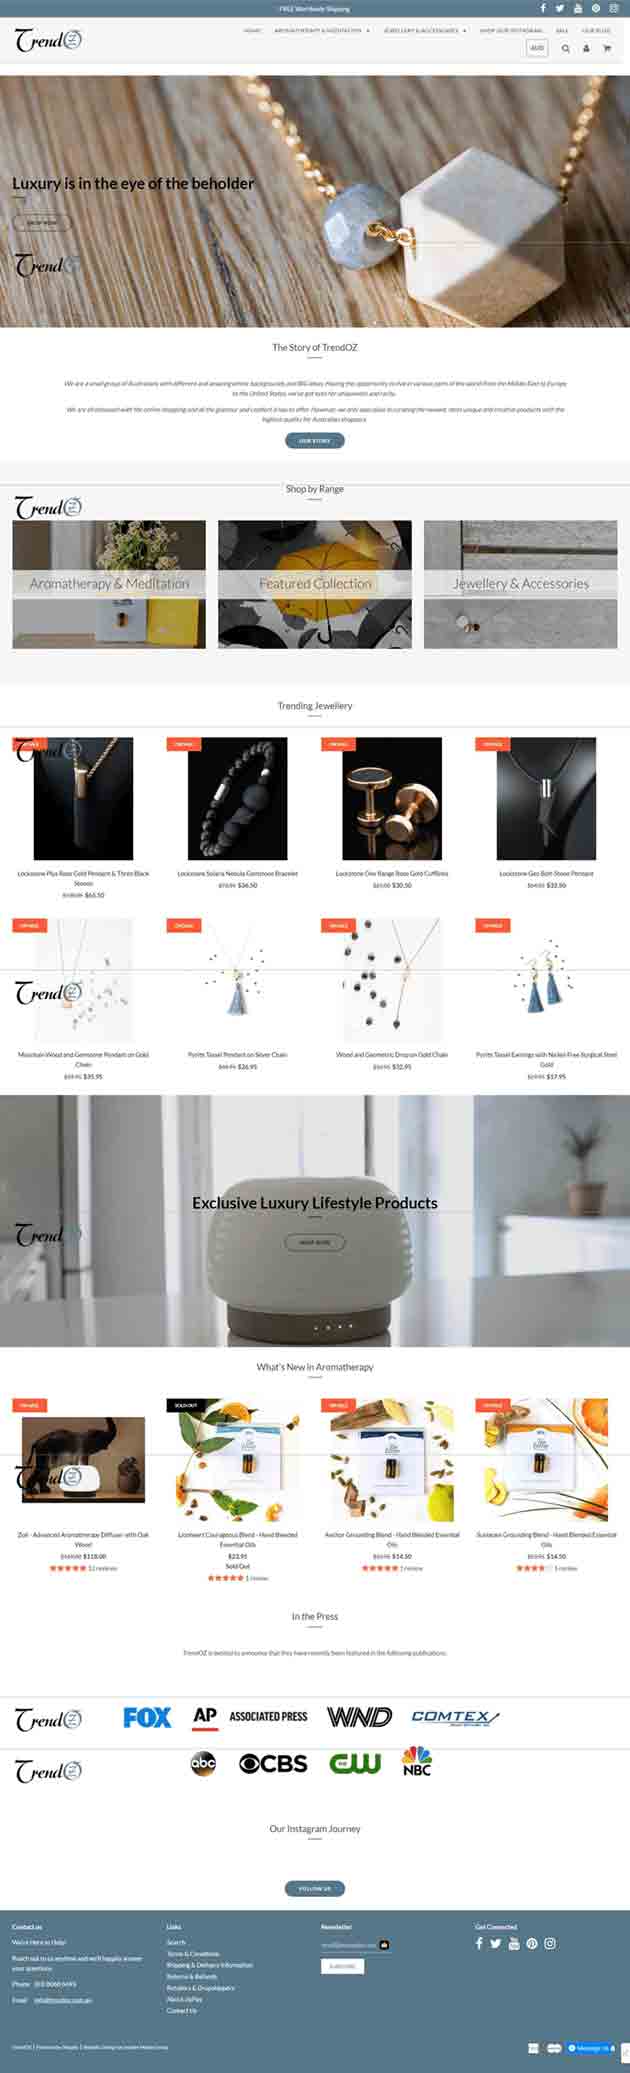 طراحی و اجرای وبسایت فروش زیورآلات توسط آژانس دیجیتال مارکتینگ باروکا